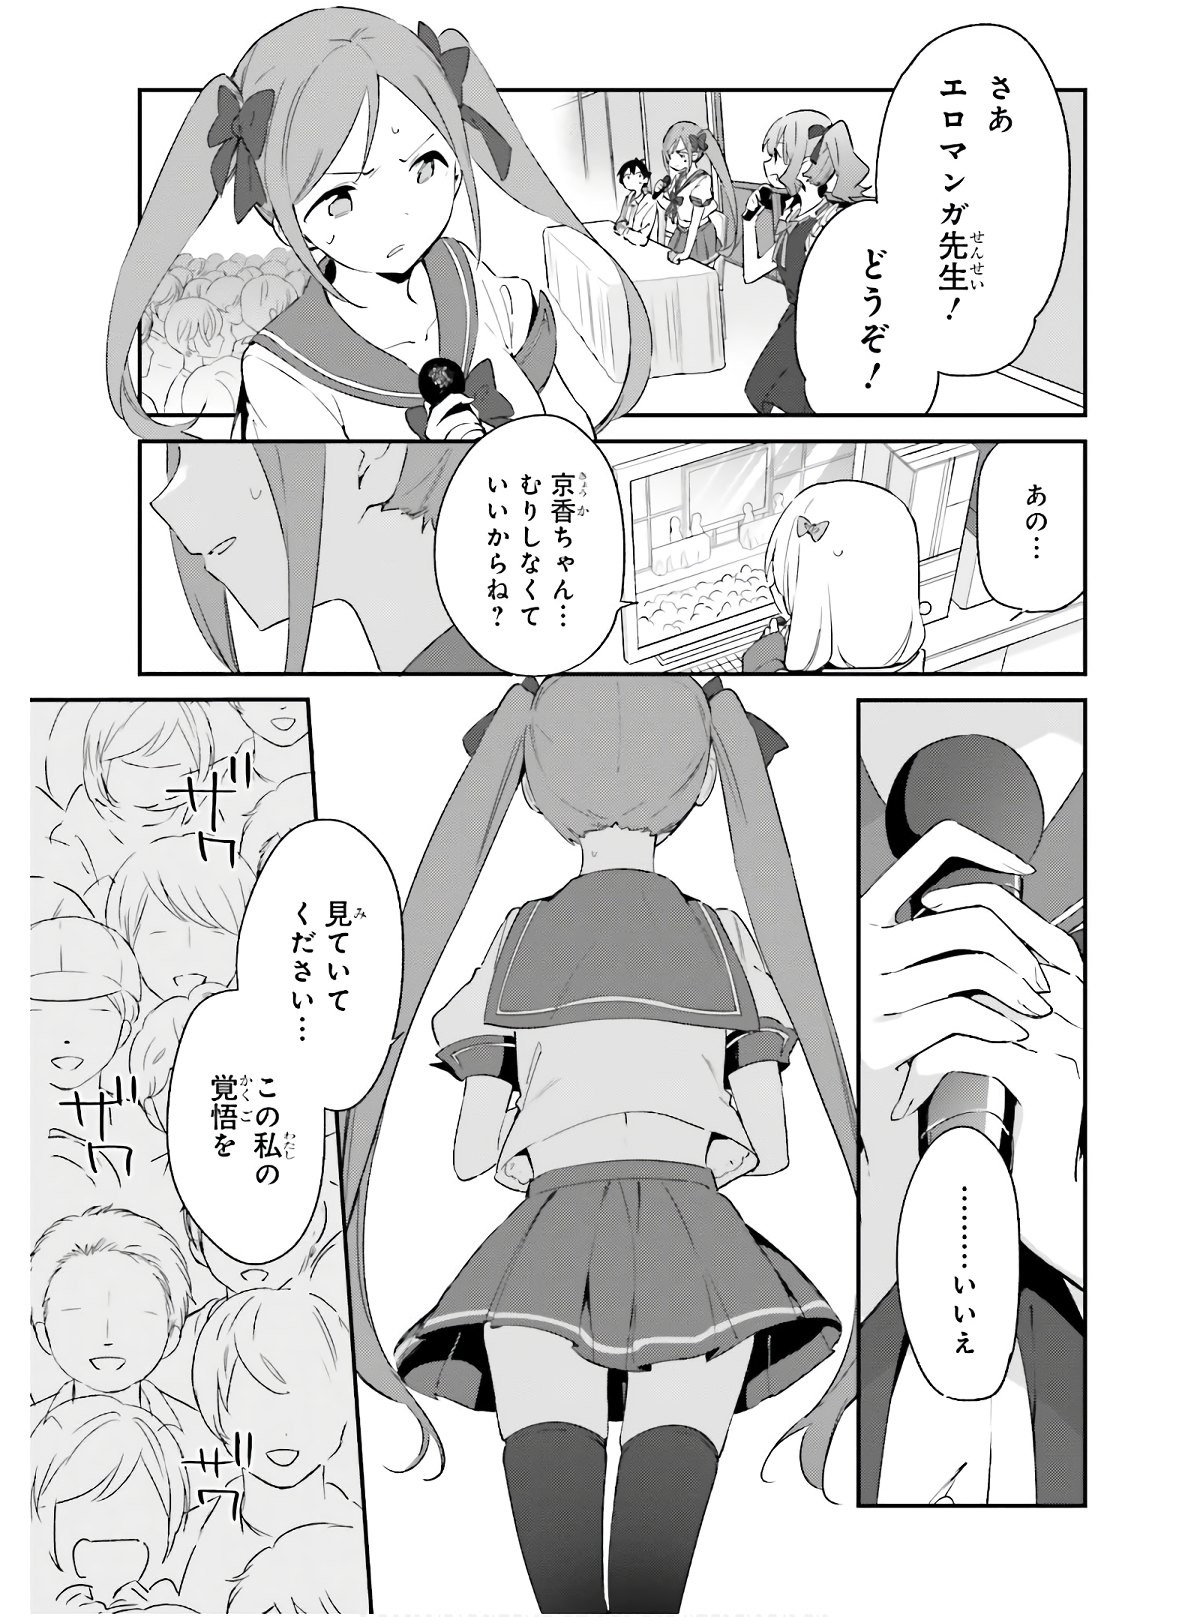 Ero Manga Sensei - Chapter 67 - Page 23